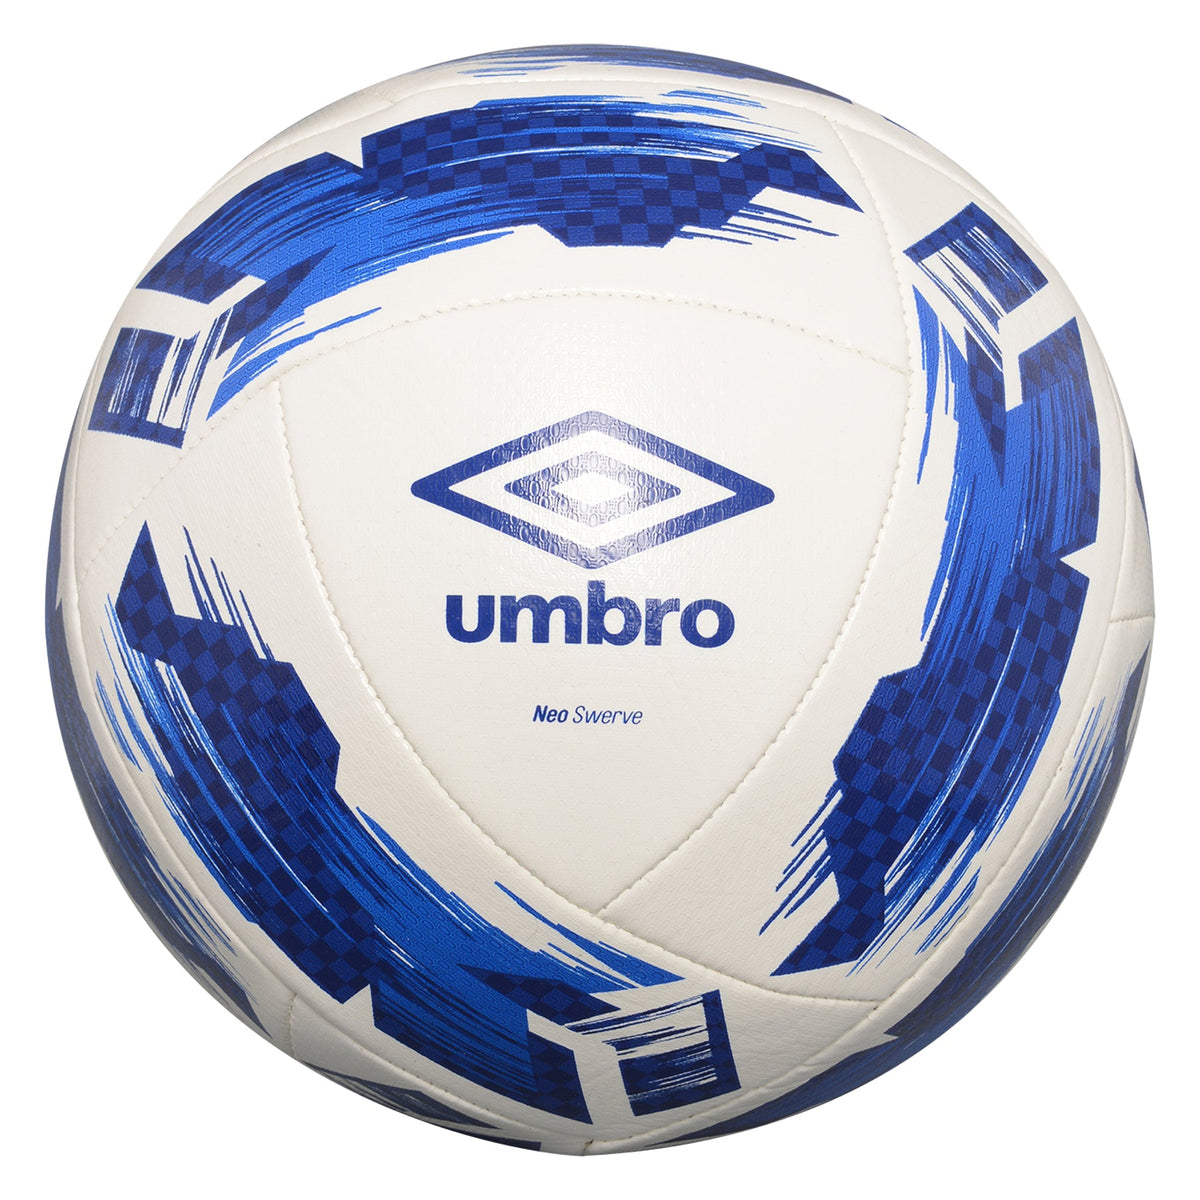 Umbro Neo Swerve Soccer Ball White/Blue